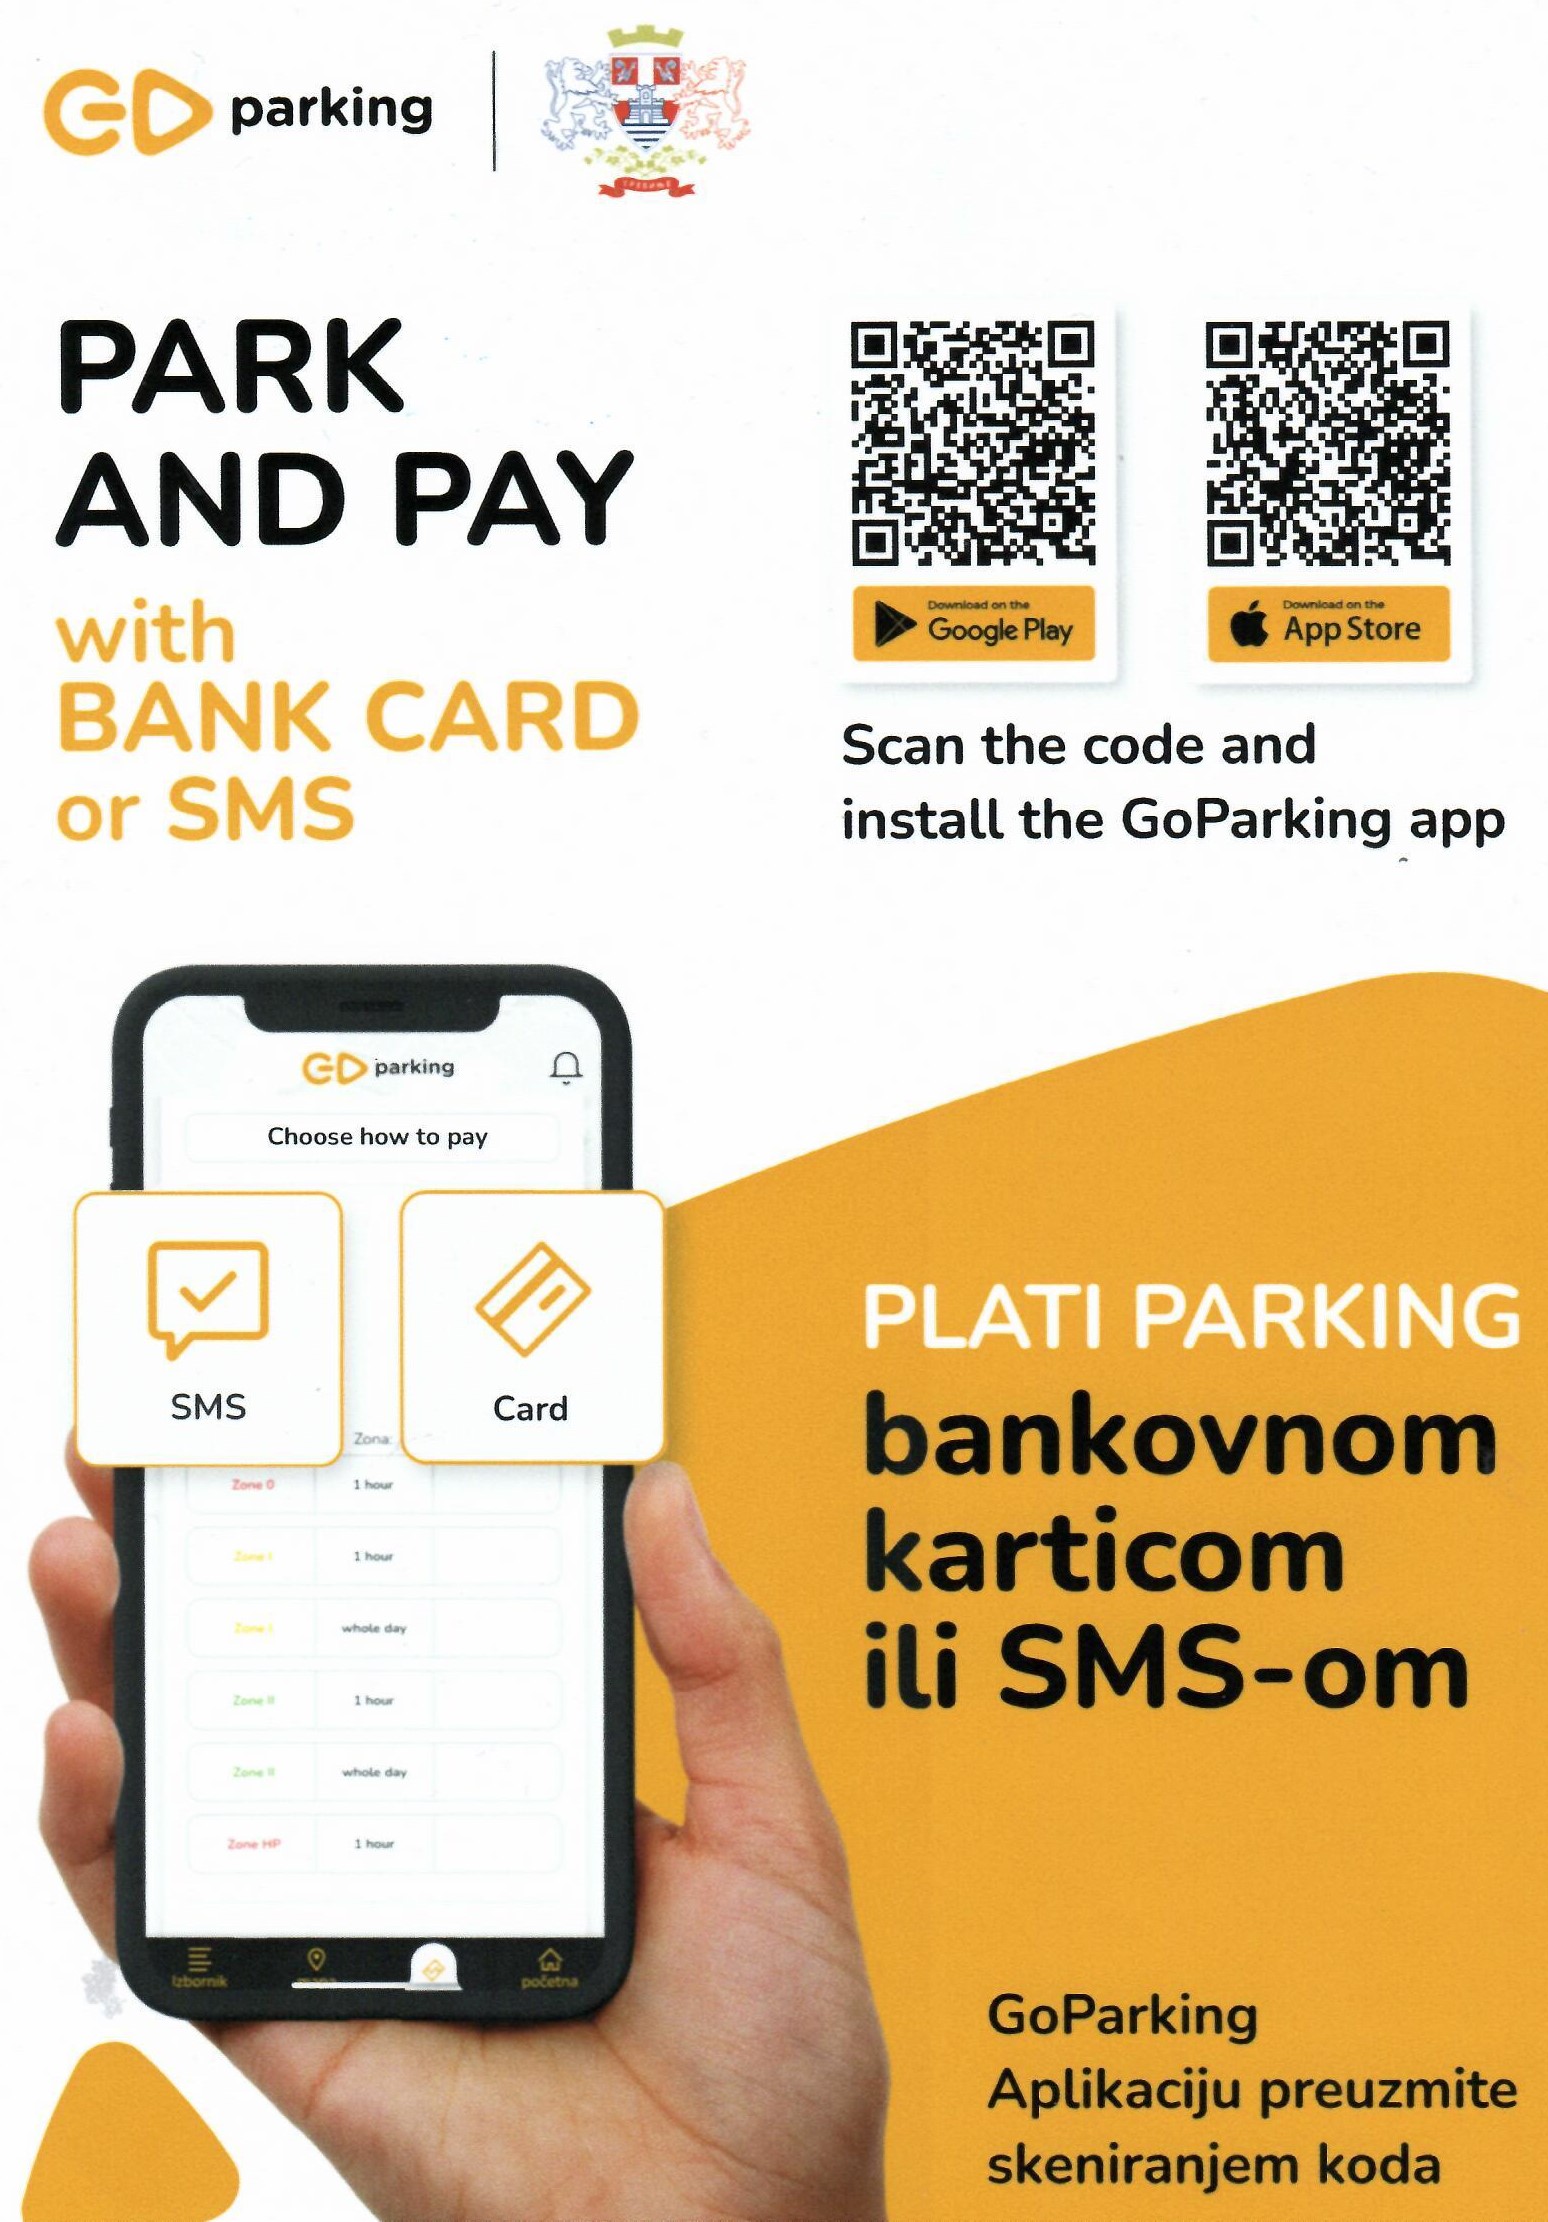 Требиње уводи плаћање паркинга банковном картицом